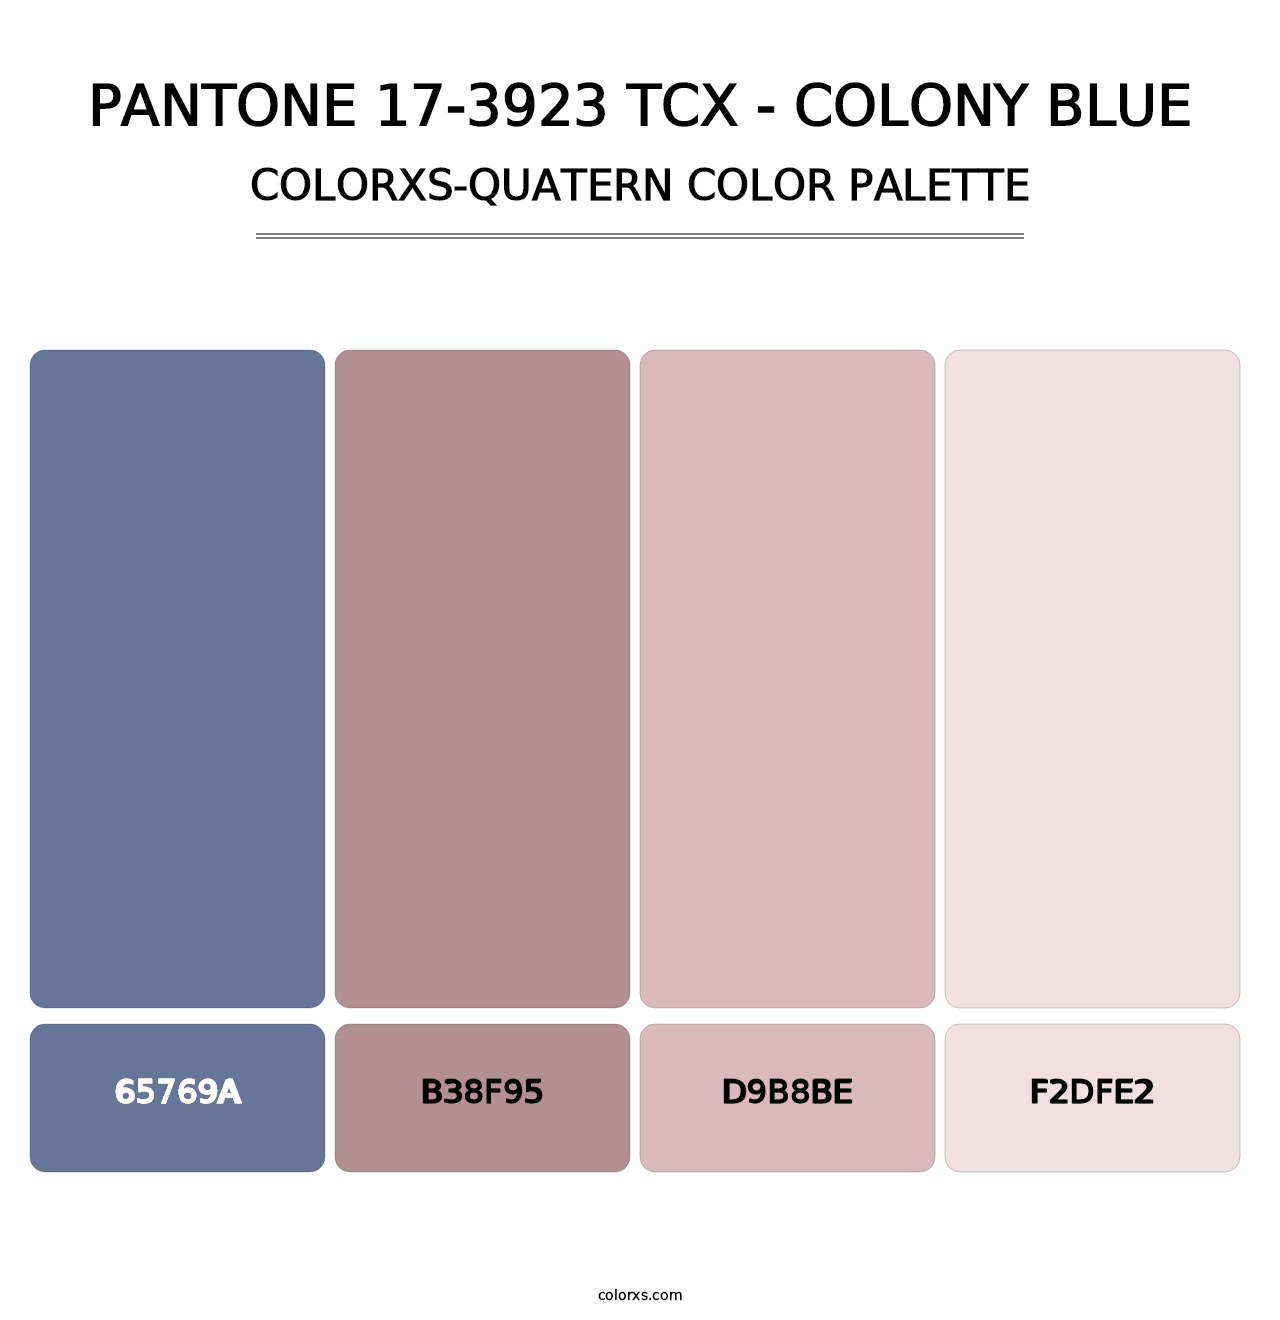 PANTONE 17-3923 TCX - Colony Blue - Colorxs Quatern Palette